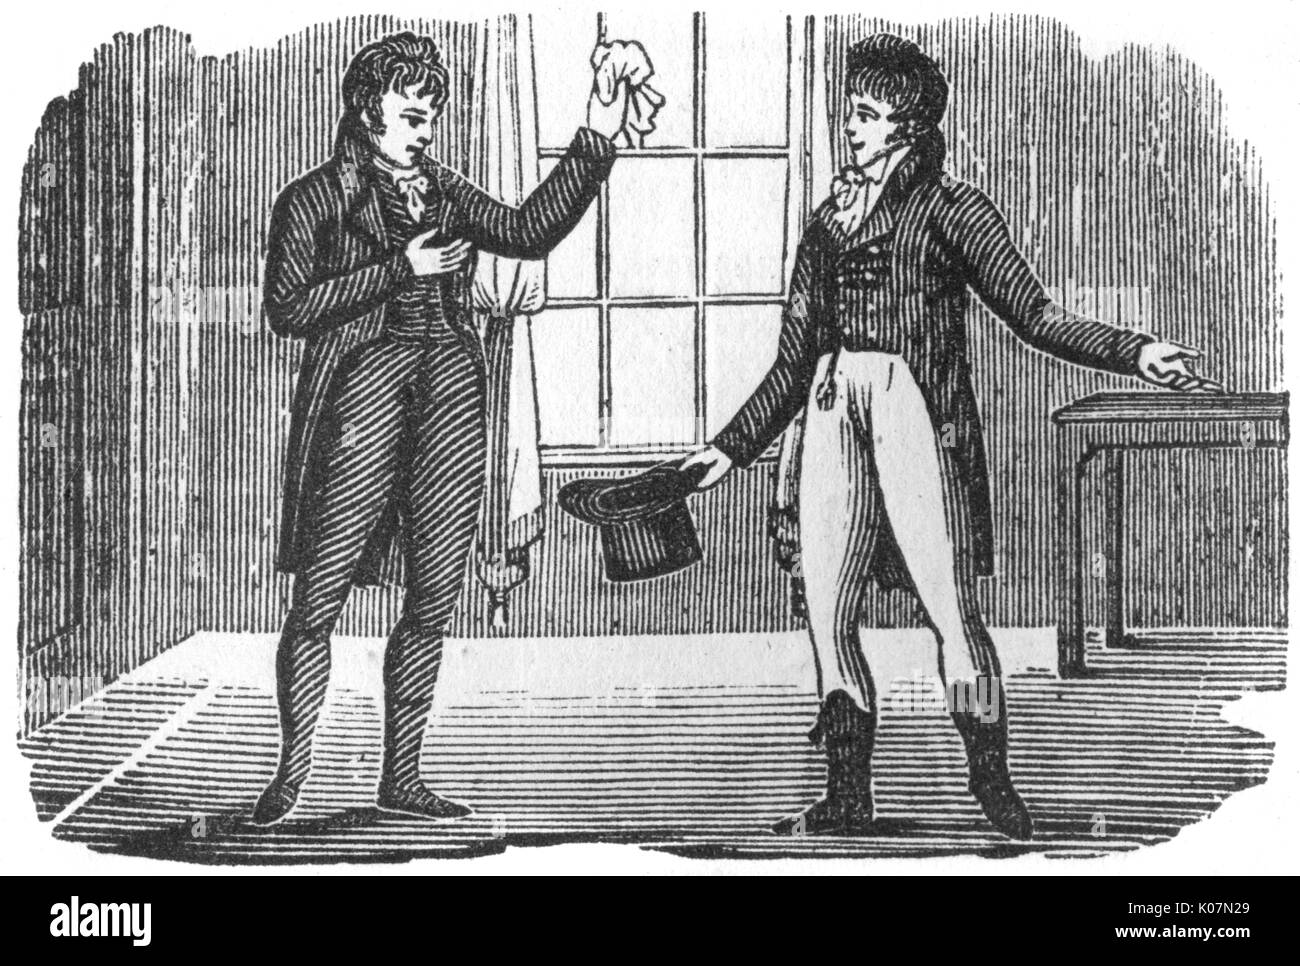 Two gentlemen, c. 1800 Stock Photo